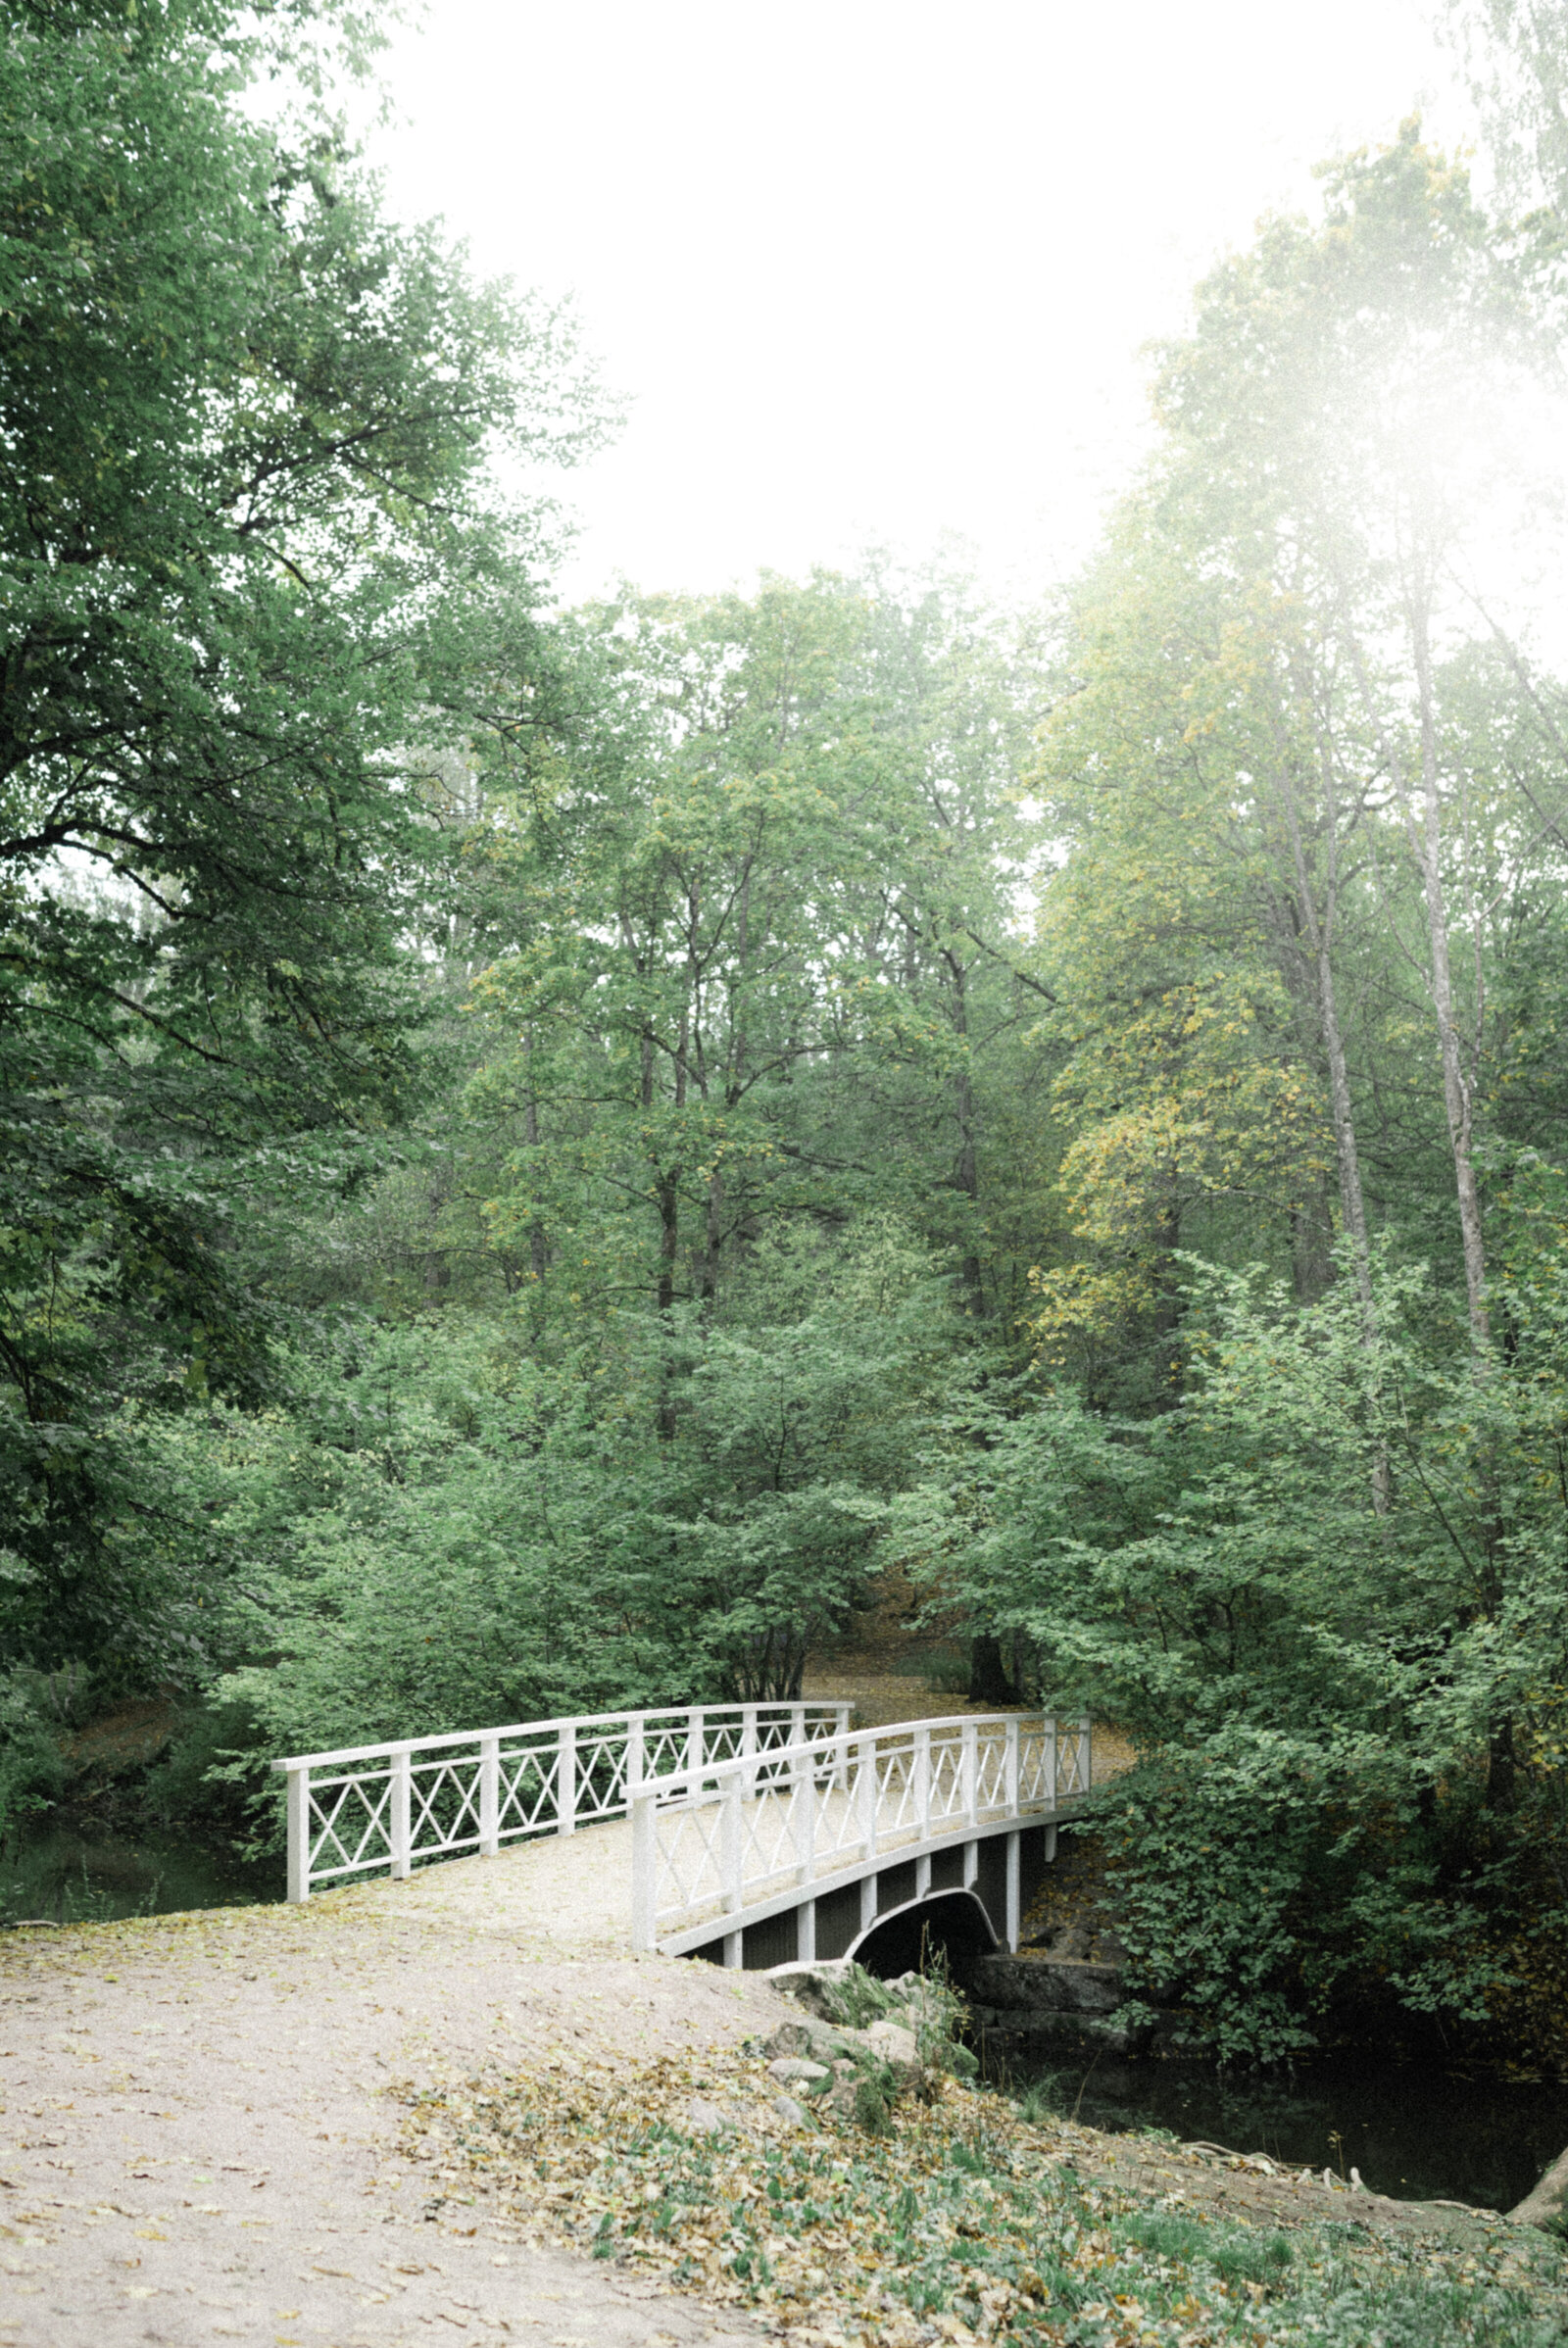 Puinen valkoinen silta ylittää joen puistossa.